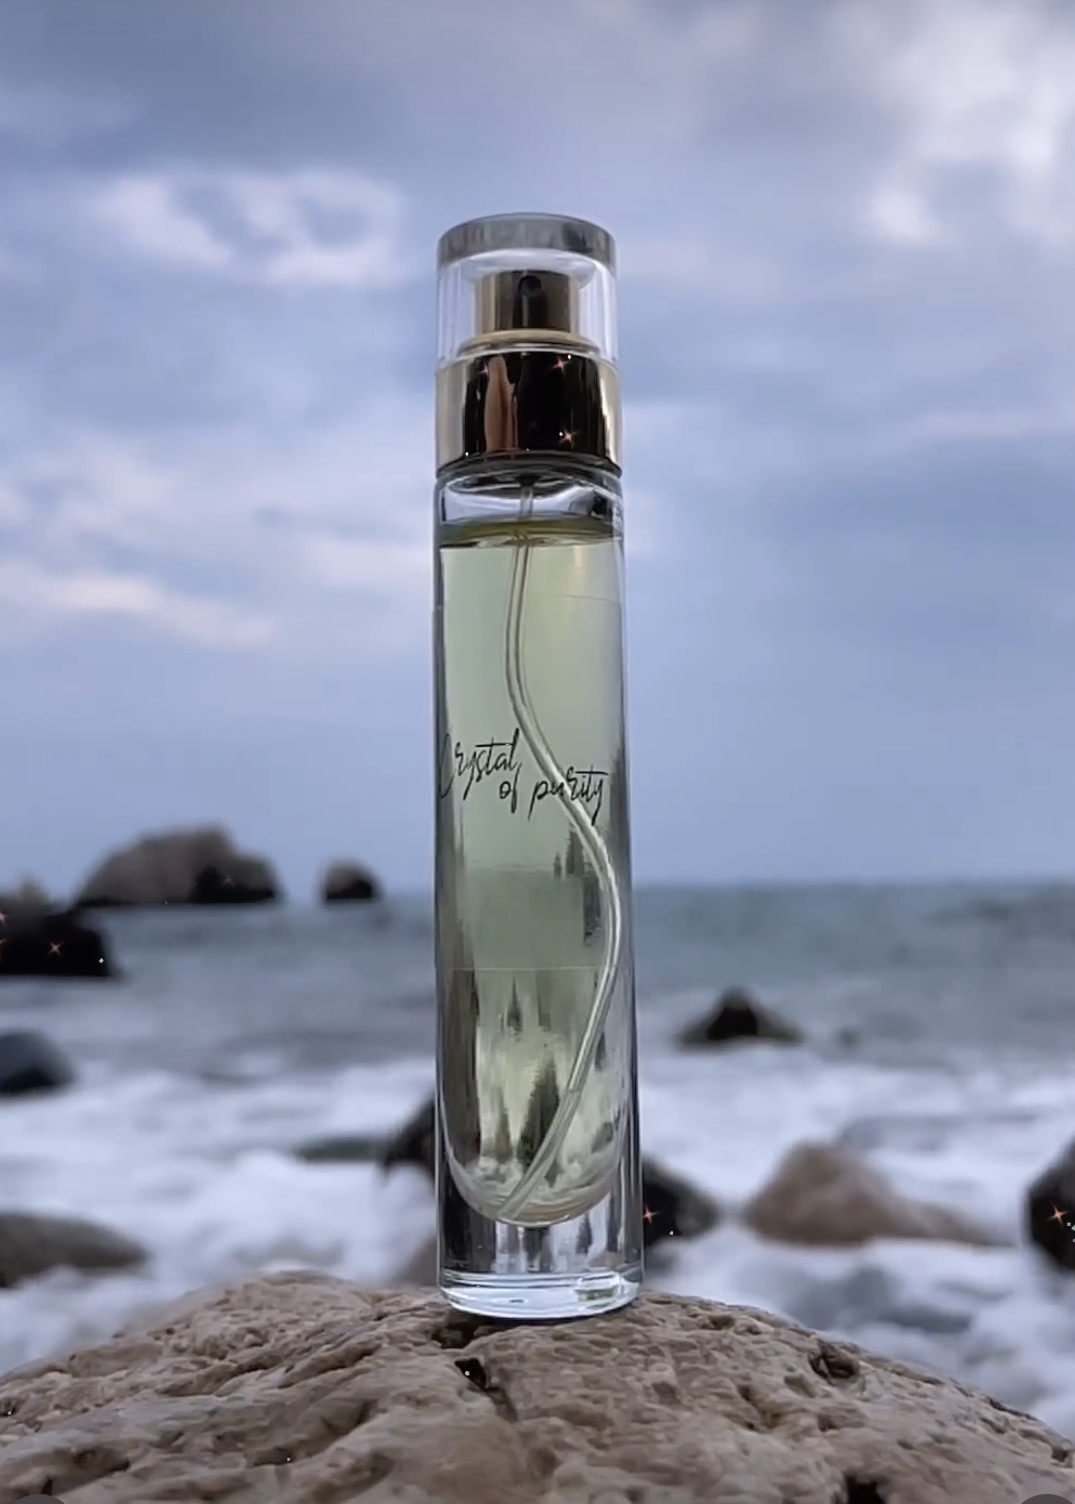 Crystal of Purity – Perfume 15 ml